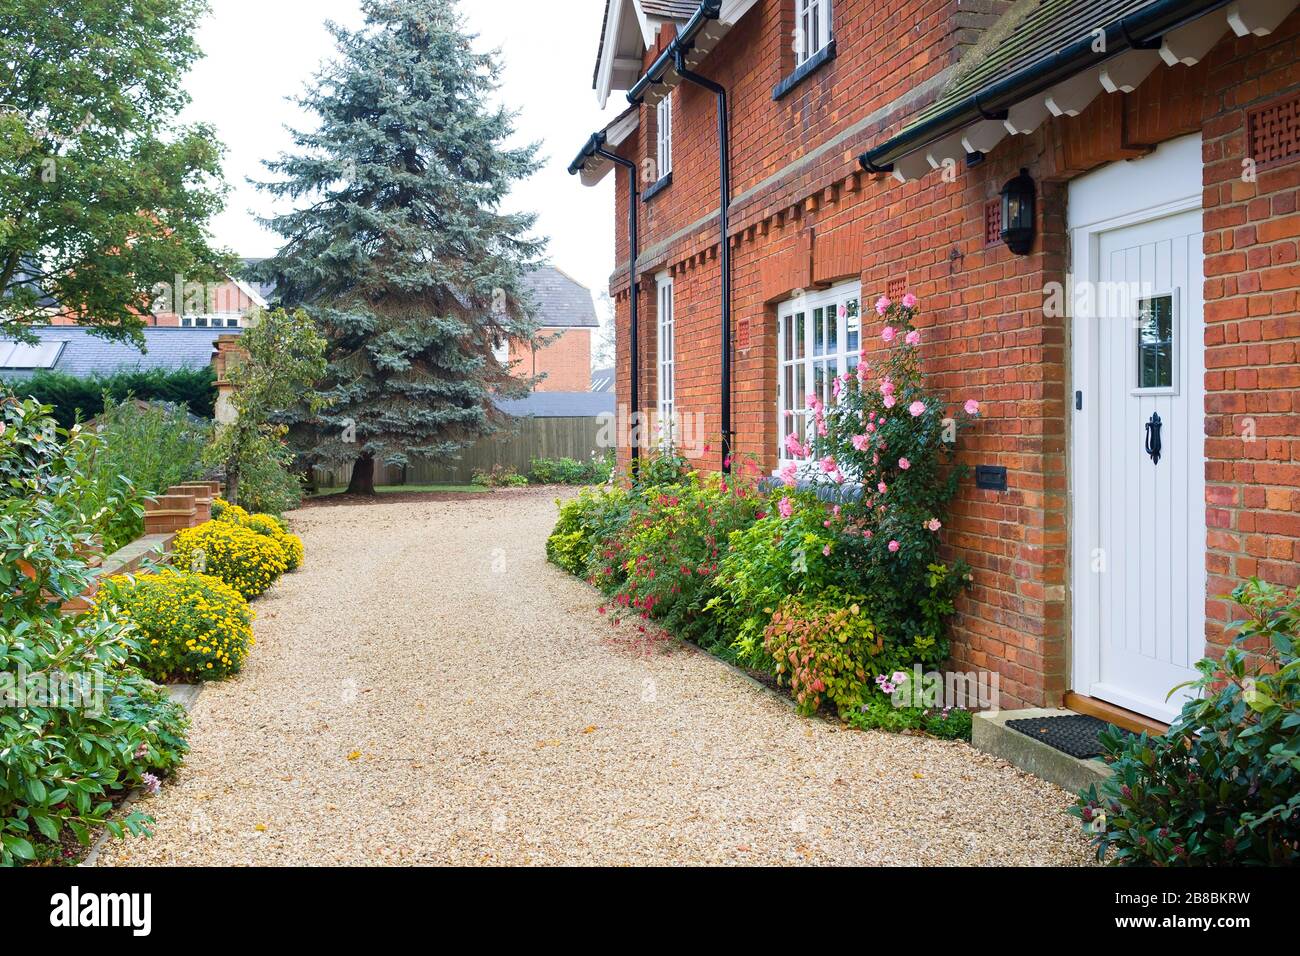 Maison de campagne anglaise et jardin en automne avec une allée de gravier. La maison est de l'époque victorienne, avec des bordures fleuries remplies d'arbustes et de vivaces Banque D'Images